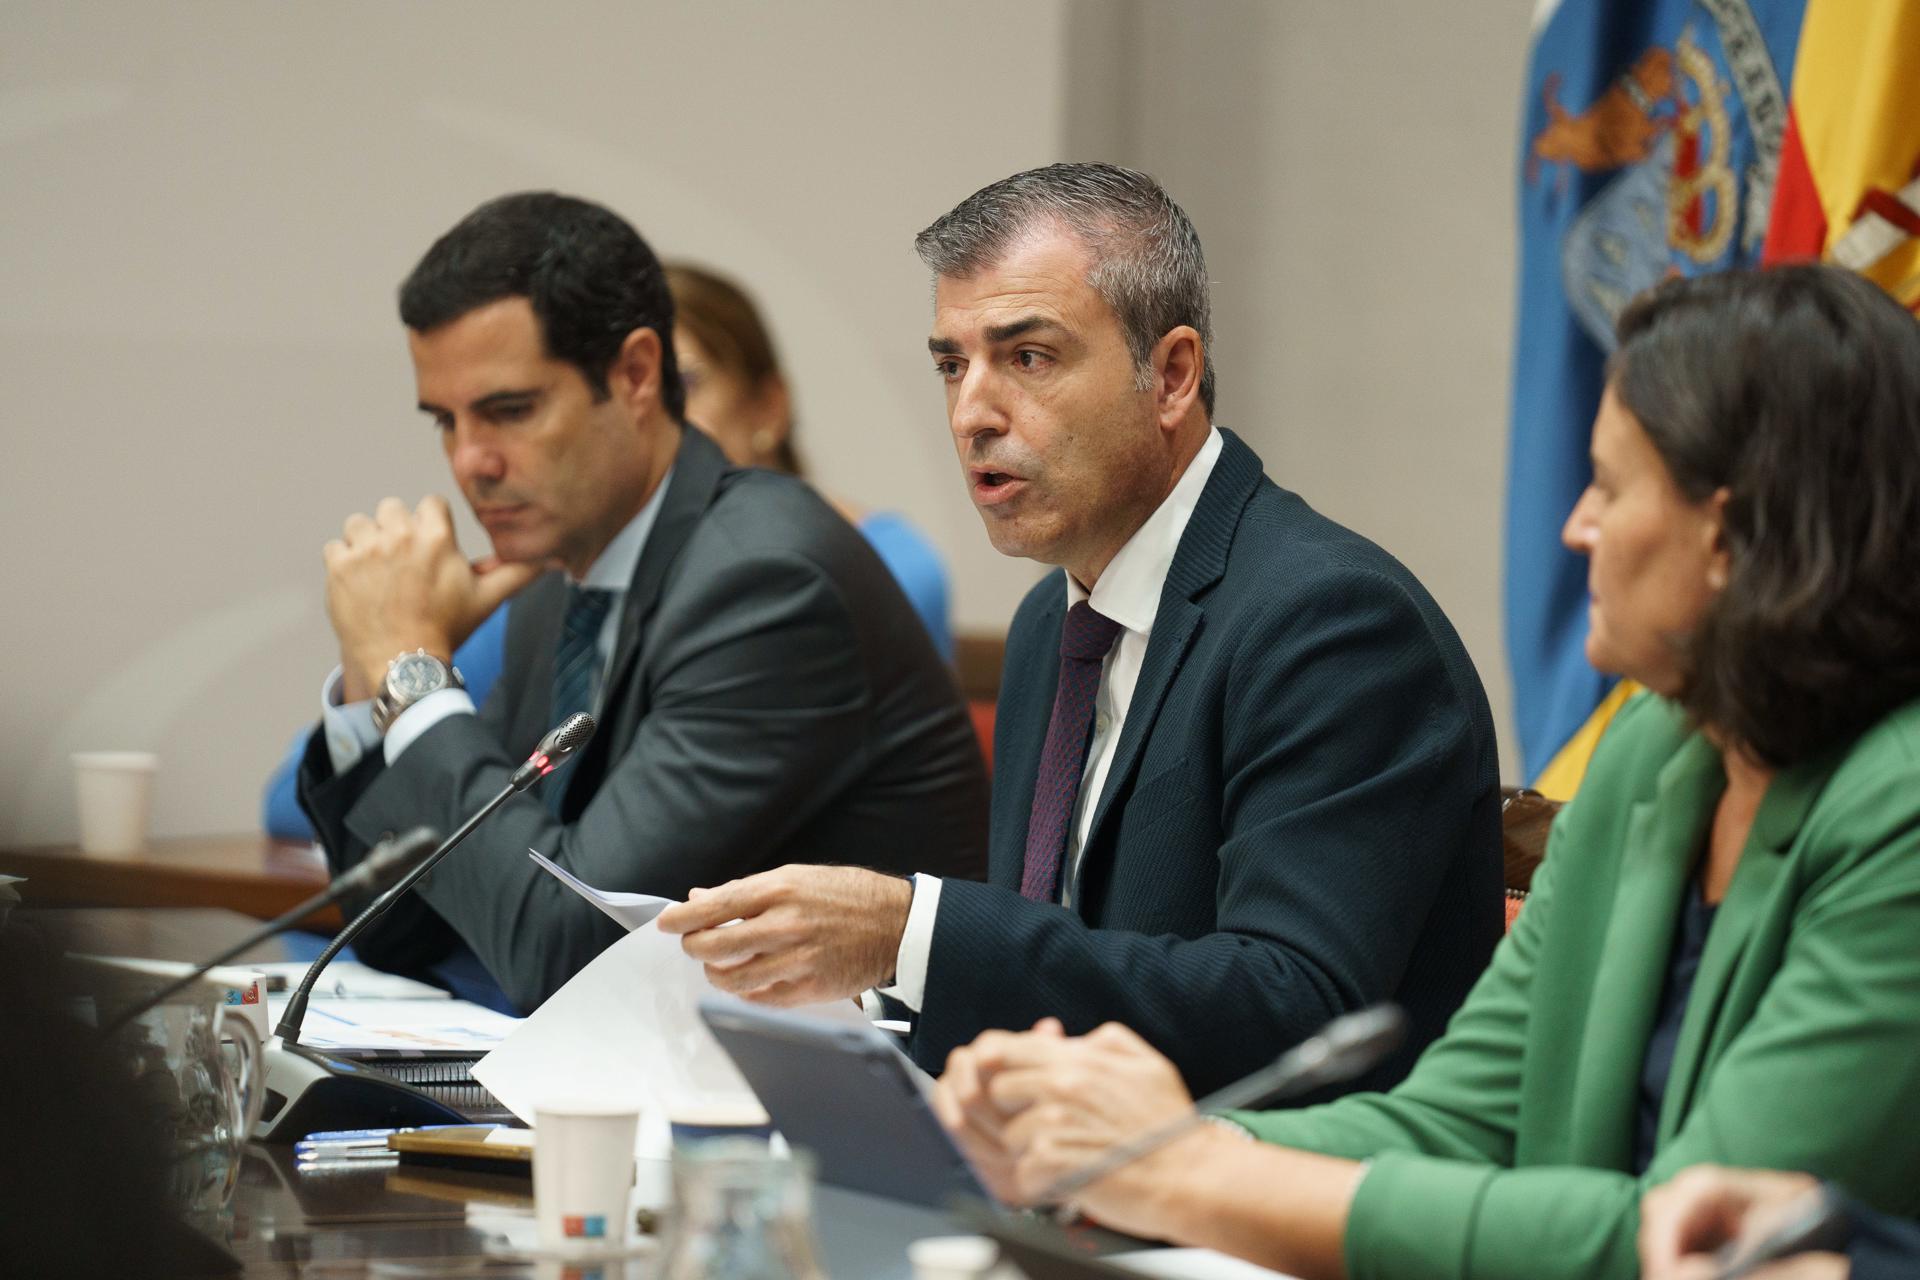 El consejero de Economía, Industria, Comercio y Autónomos del Gobierno de Canarias, Manuel Domínguez, compareció este miércoles en comisión parlamentaria. EFE/Ramón de la Rocha